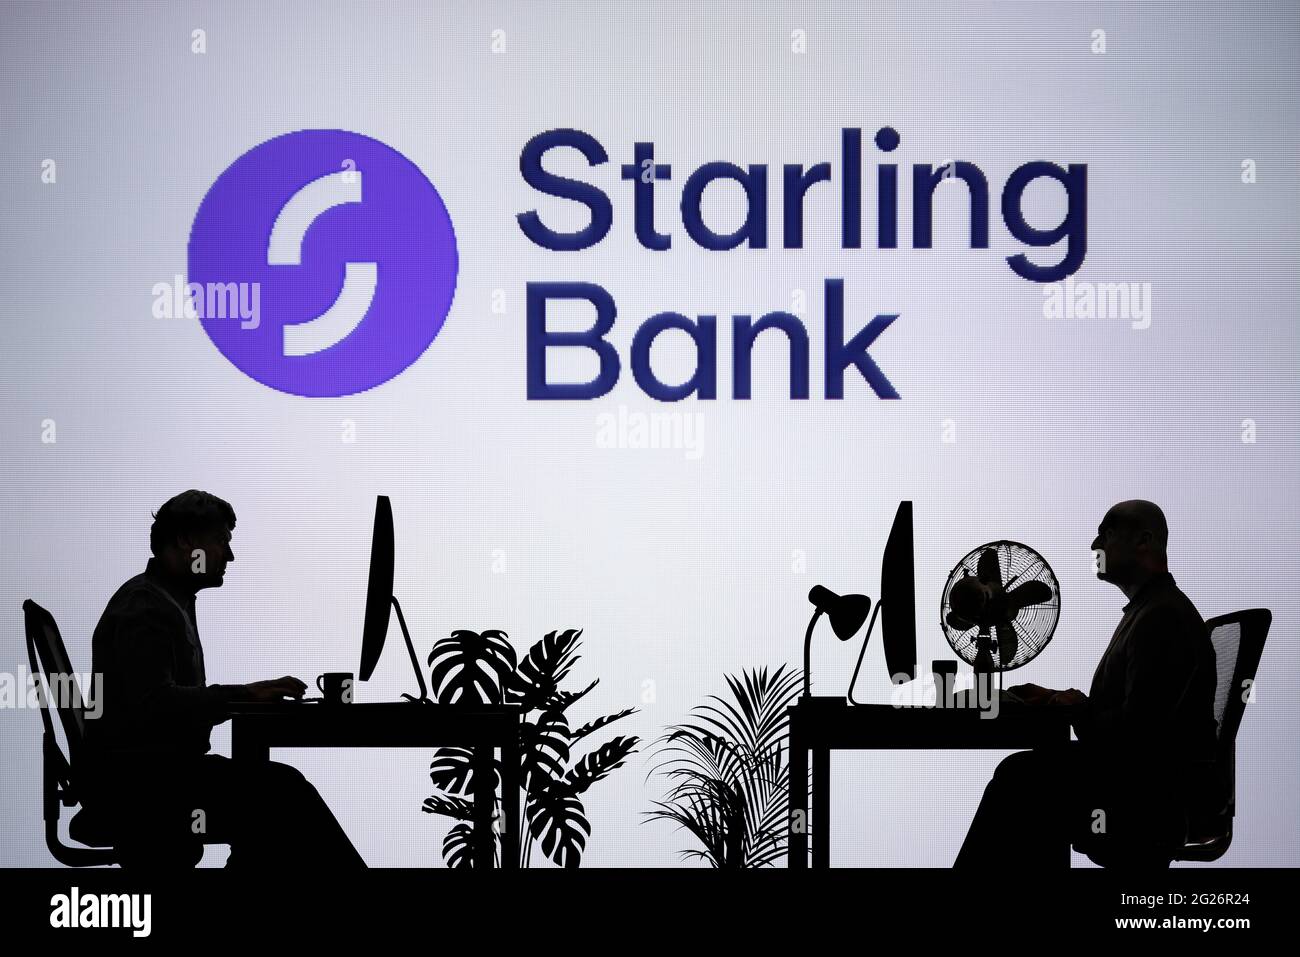 El logotipo de Starling Bank se ve en una pantalla LED de fondo, mientras que dos personas con siluetas trabajan en un entorno de oficina (sólo para uso editorial) Foto de stock